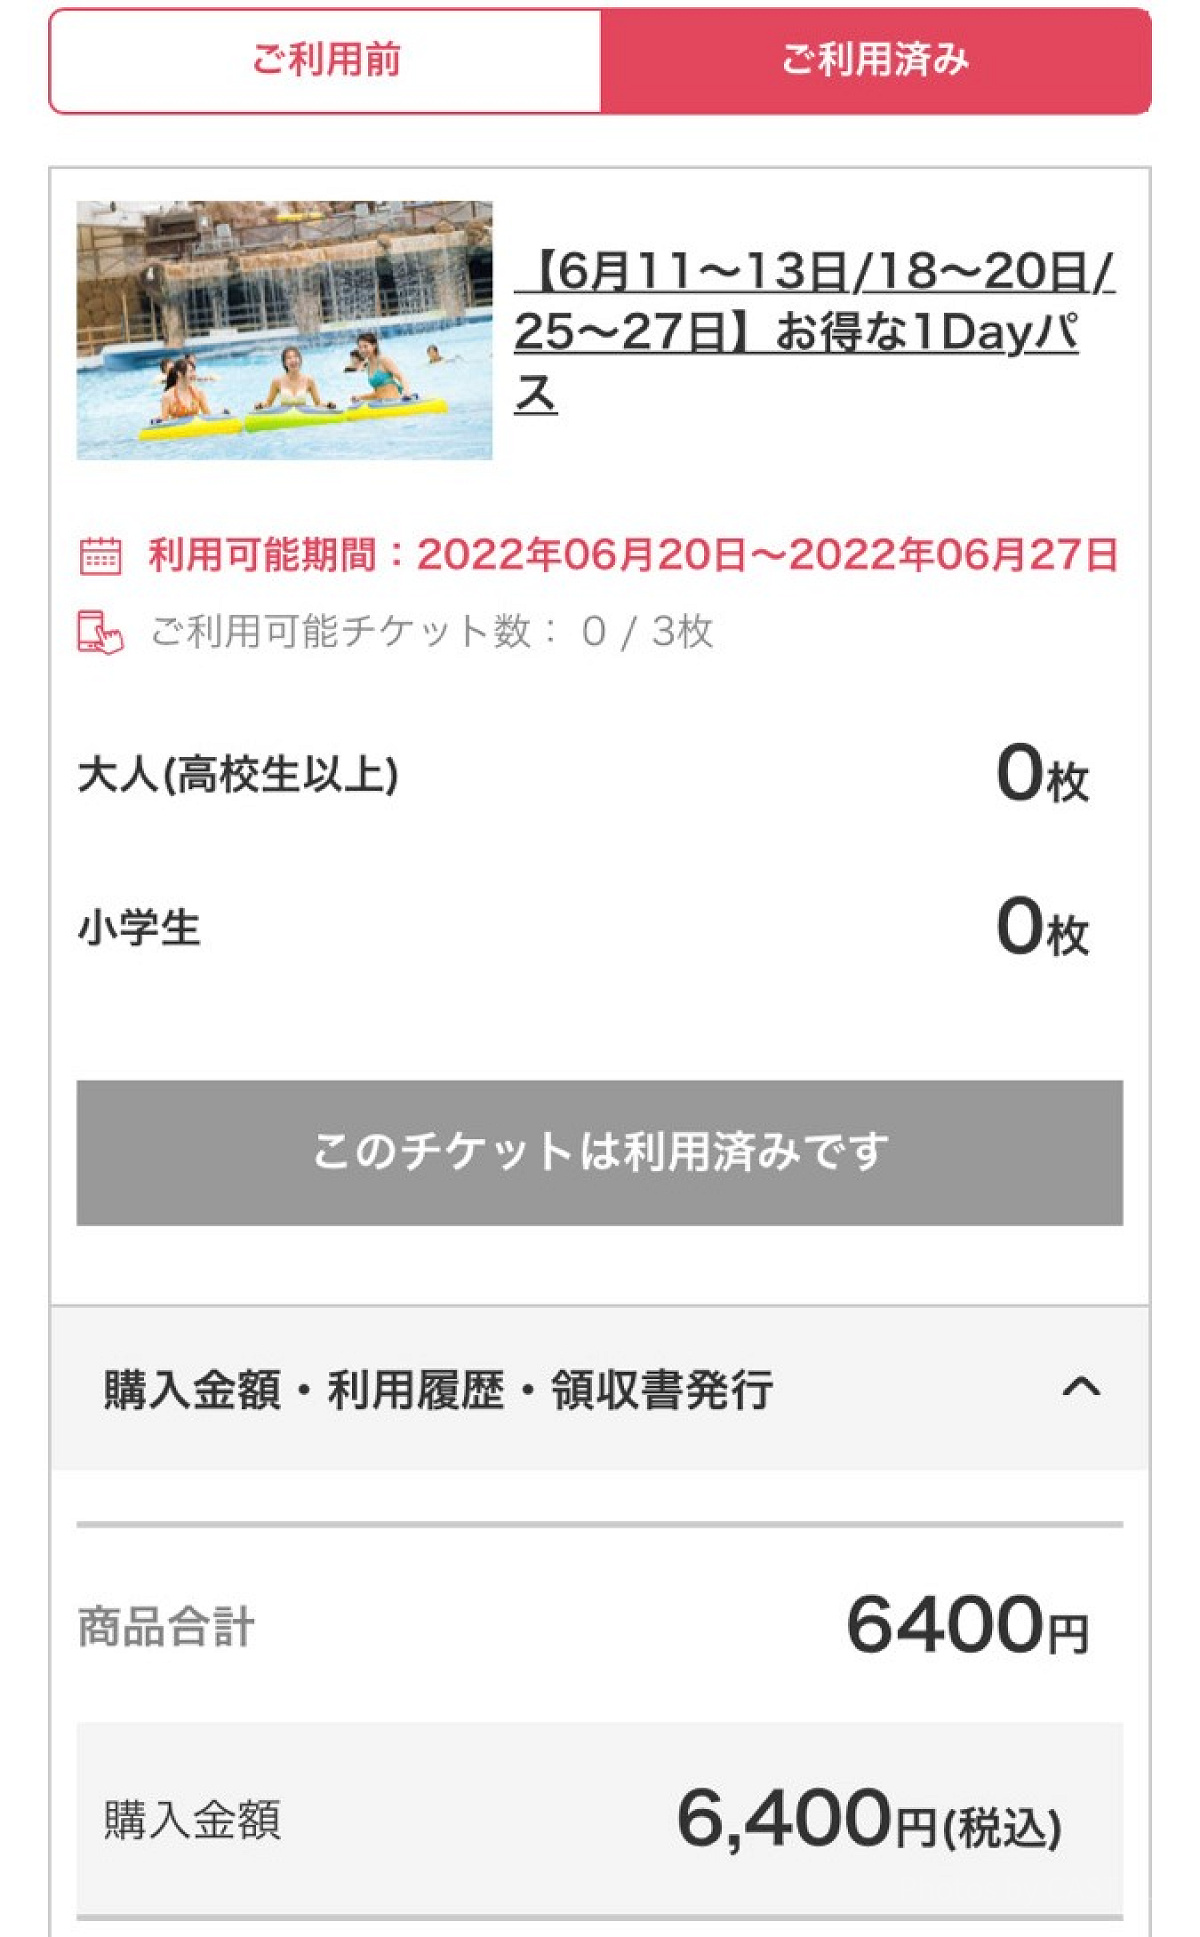 東京サマーランドの電子チケット